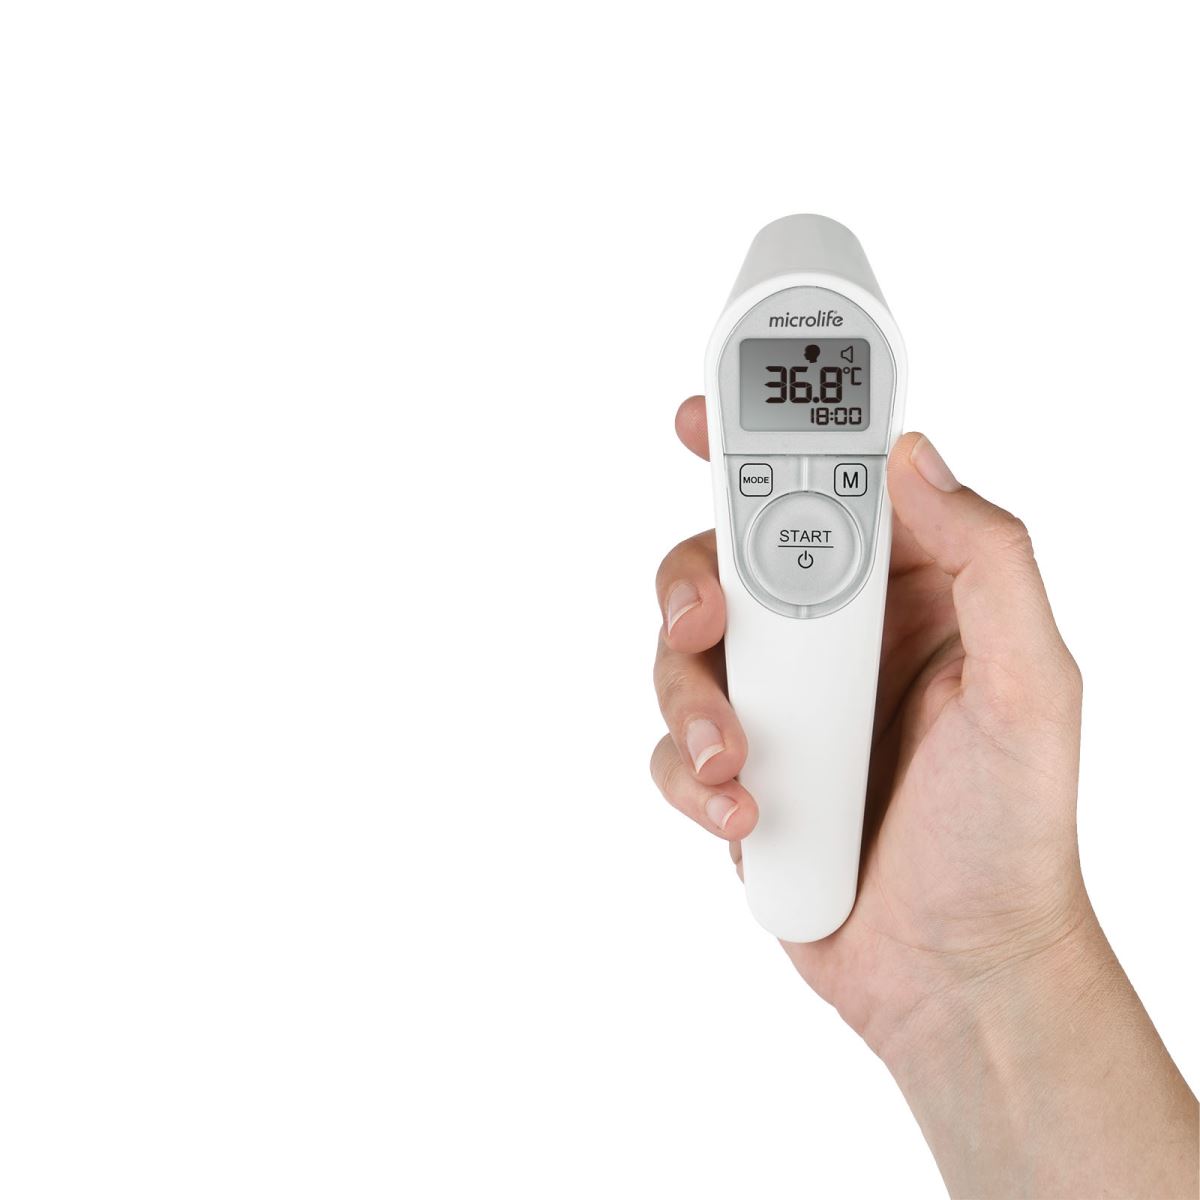 Trọn bộ nhiệt kế hồng ngoại đo trán đời mới NC200 chính hãng Microlife Thụy Sĩ (Mẫu mới kèm hộp đựng)